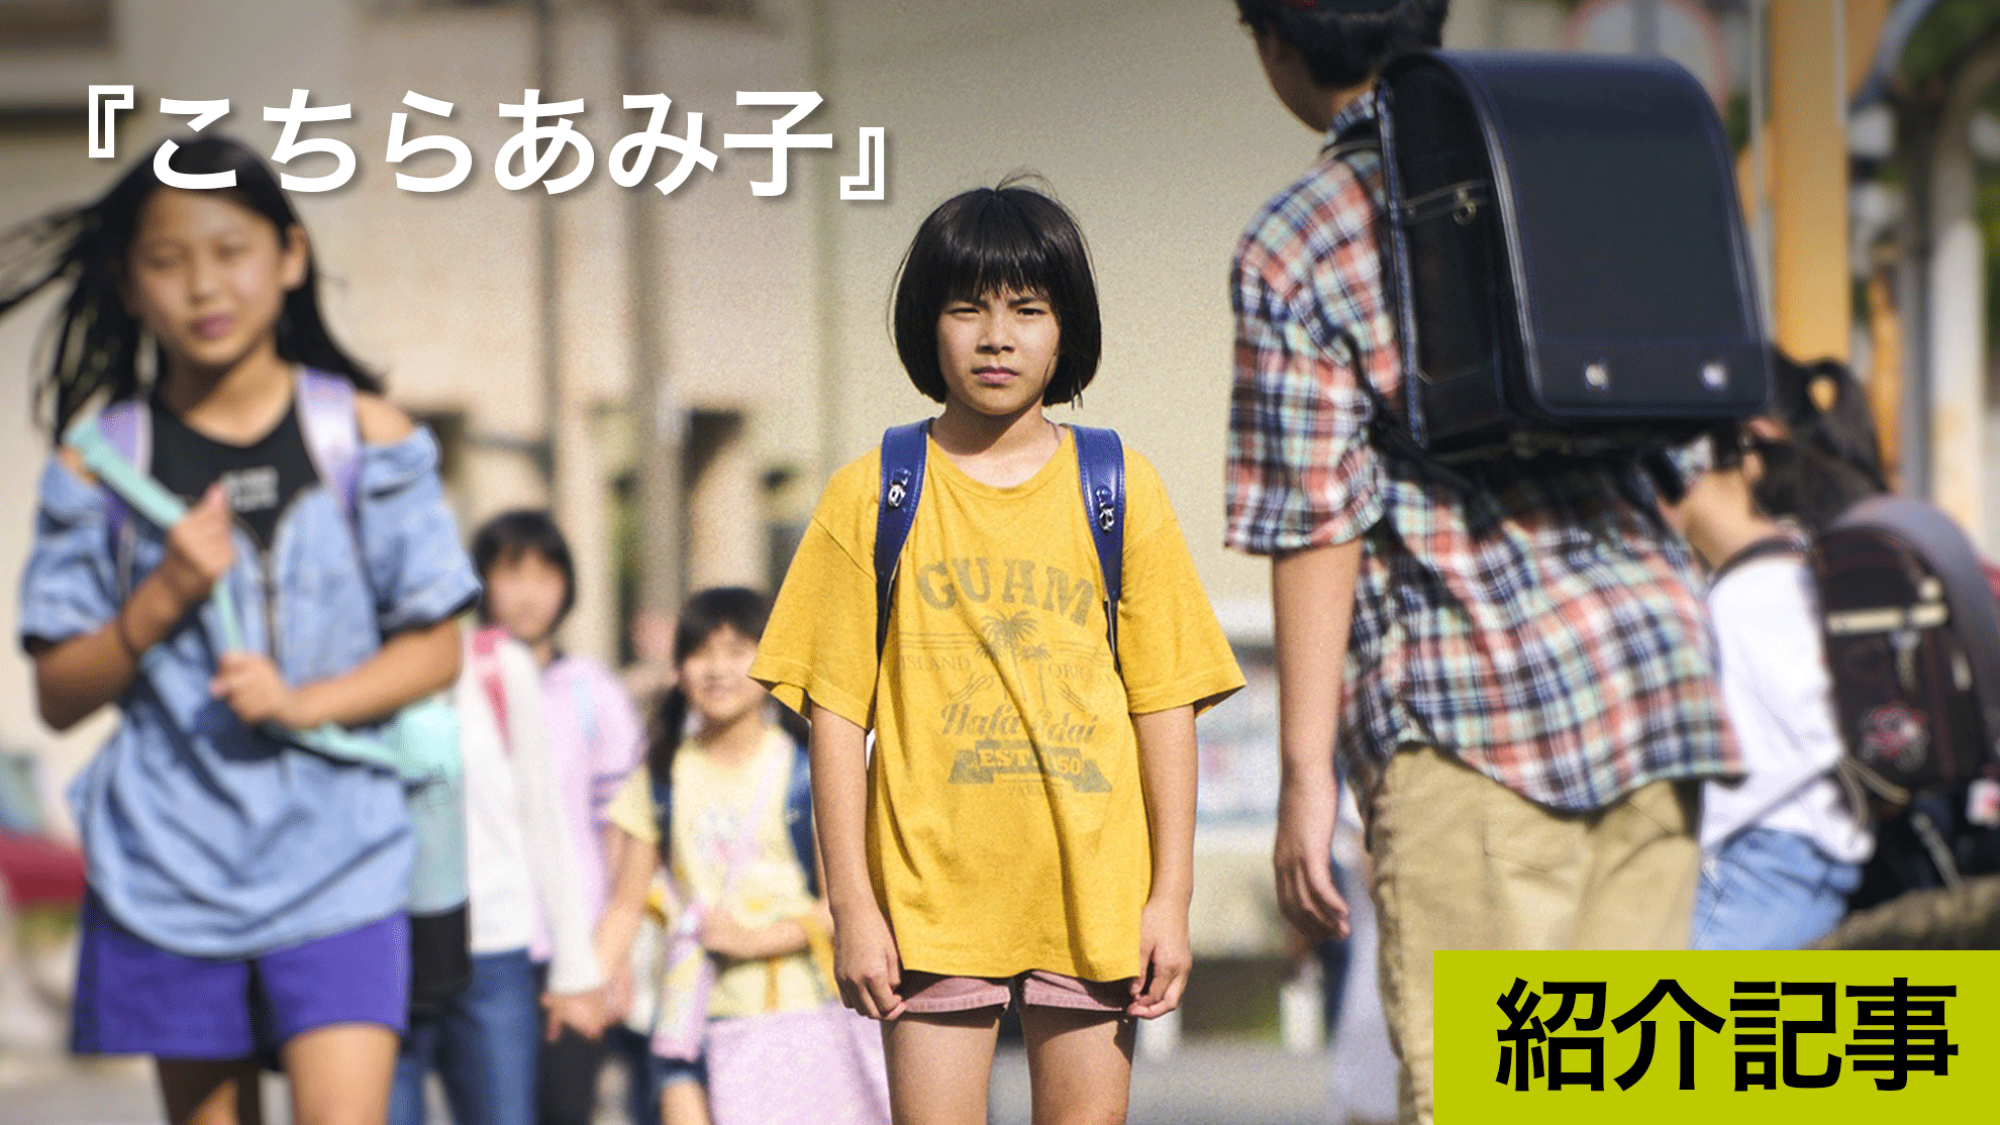 『こちらあみ子』芥川賞受賞作家・今村夏子のデビュー作を原作に、無垢で風変わりな少女のまなざしを描く